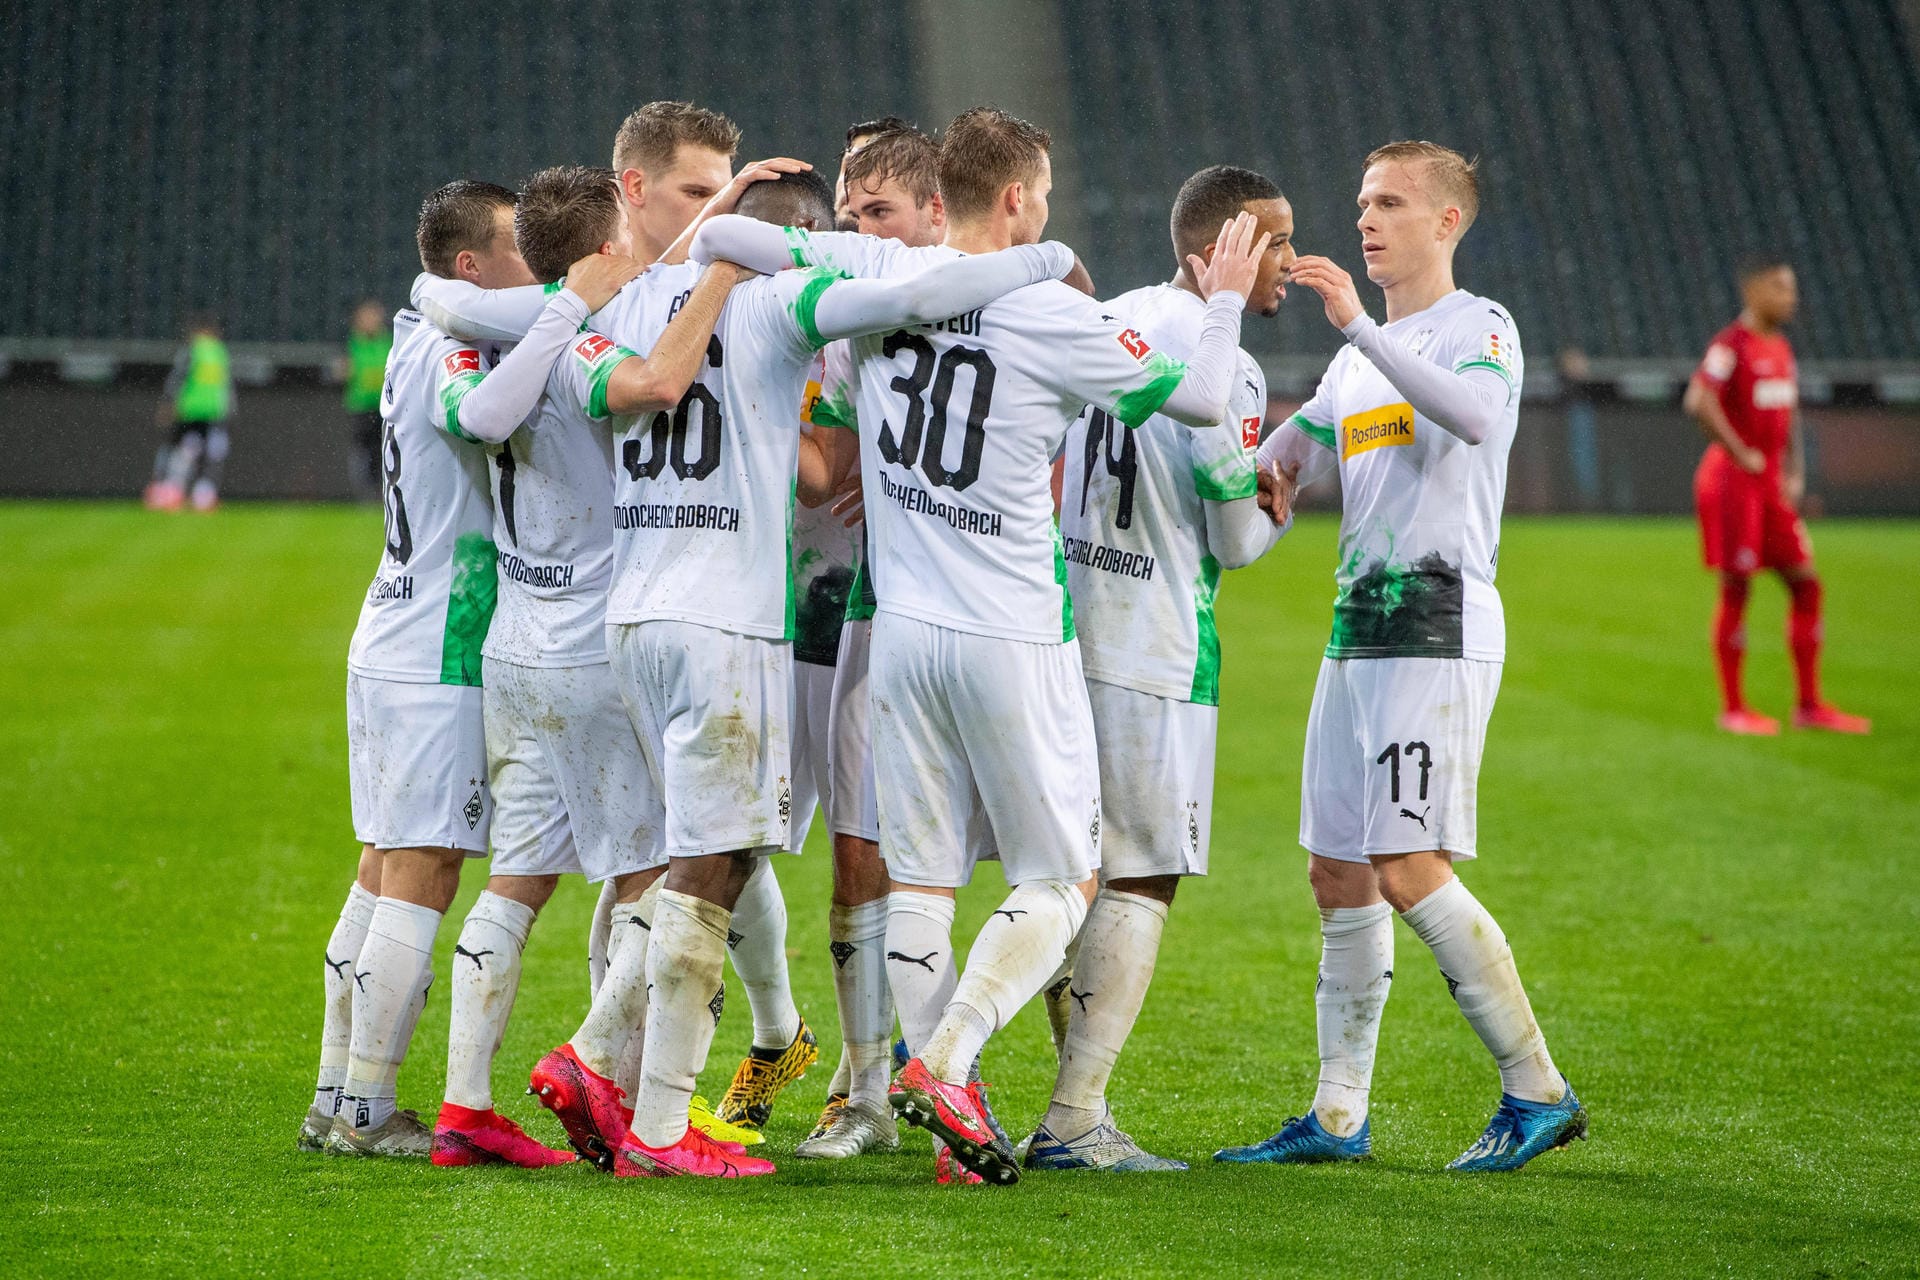 Als erste Mannschaft der Bundesliga hat sich das Team von Borussia Mönchengladbach freiwillig dazu bereit erklärt, auf Gehalt zu verzichten. Der Trainerstab, Direktoren und Geschäftsführer der Borussia schließen sich dem Impuls der Mannschaft an.